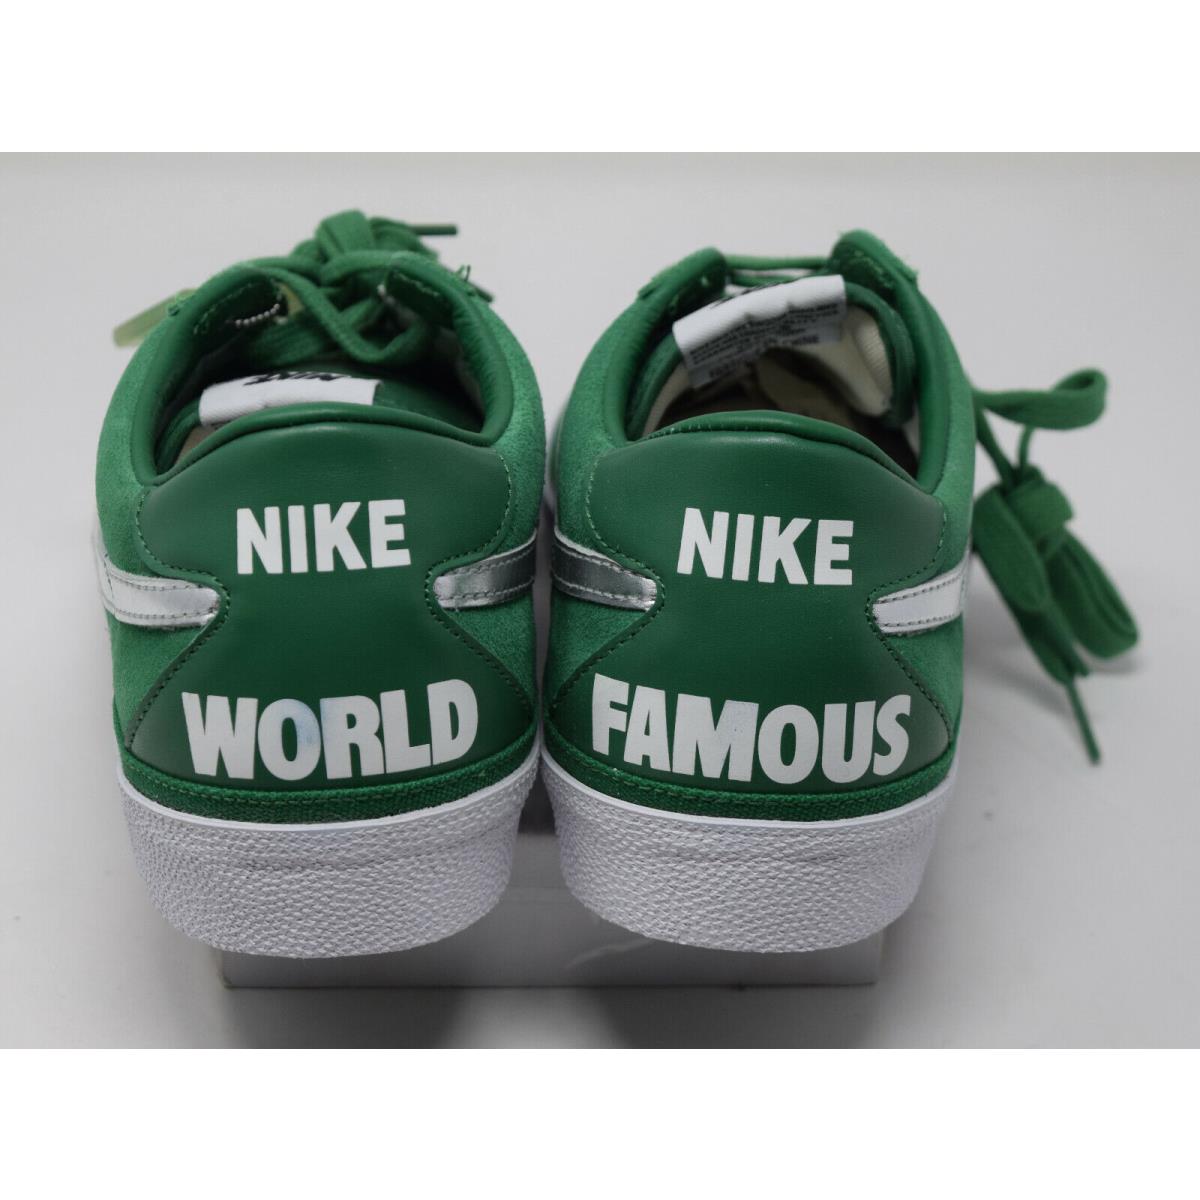 Nike shoes Bruin - Green 2